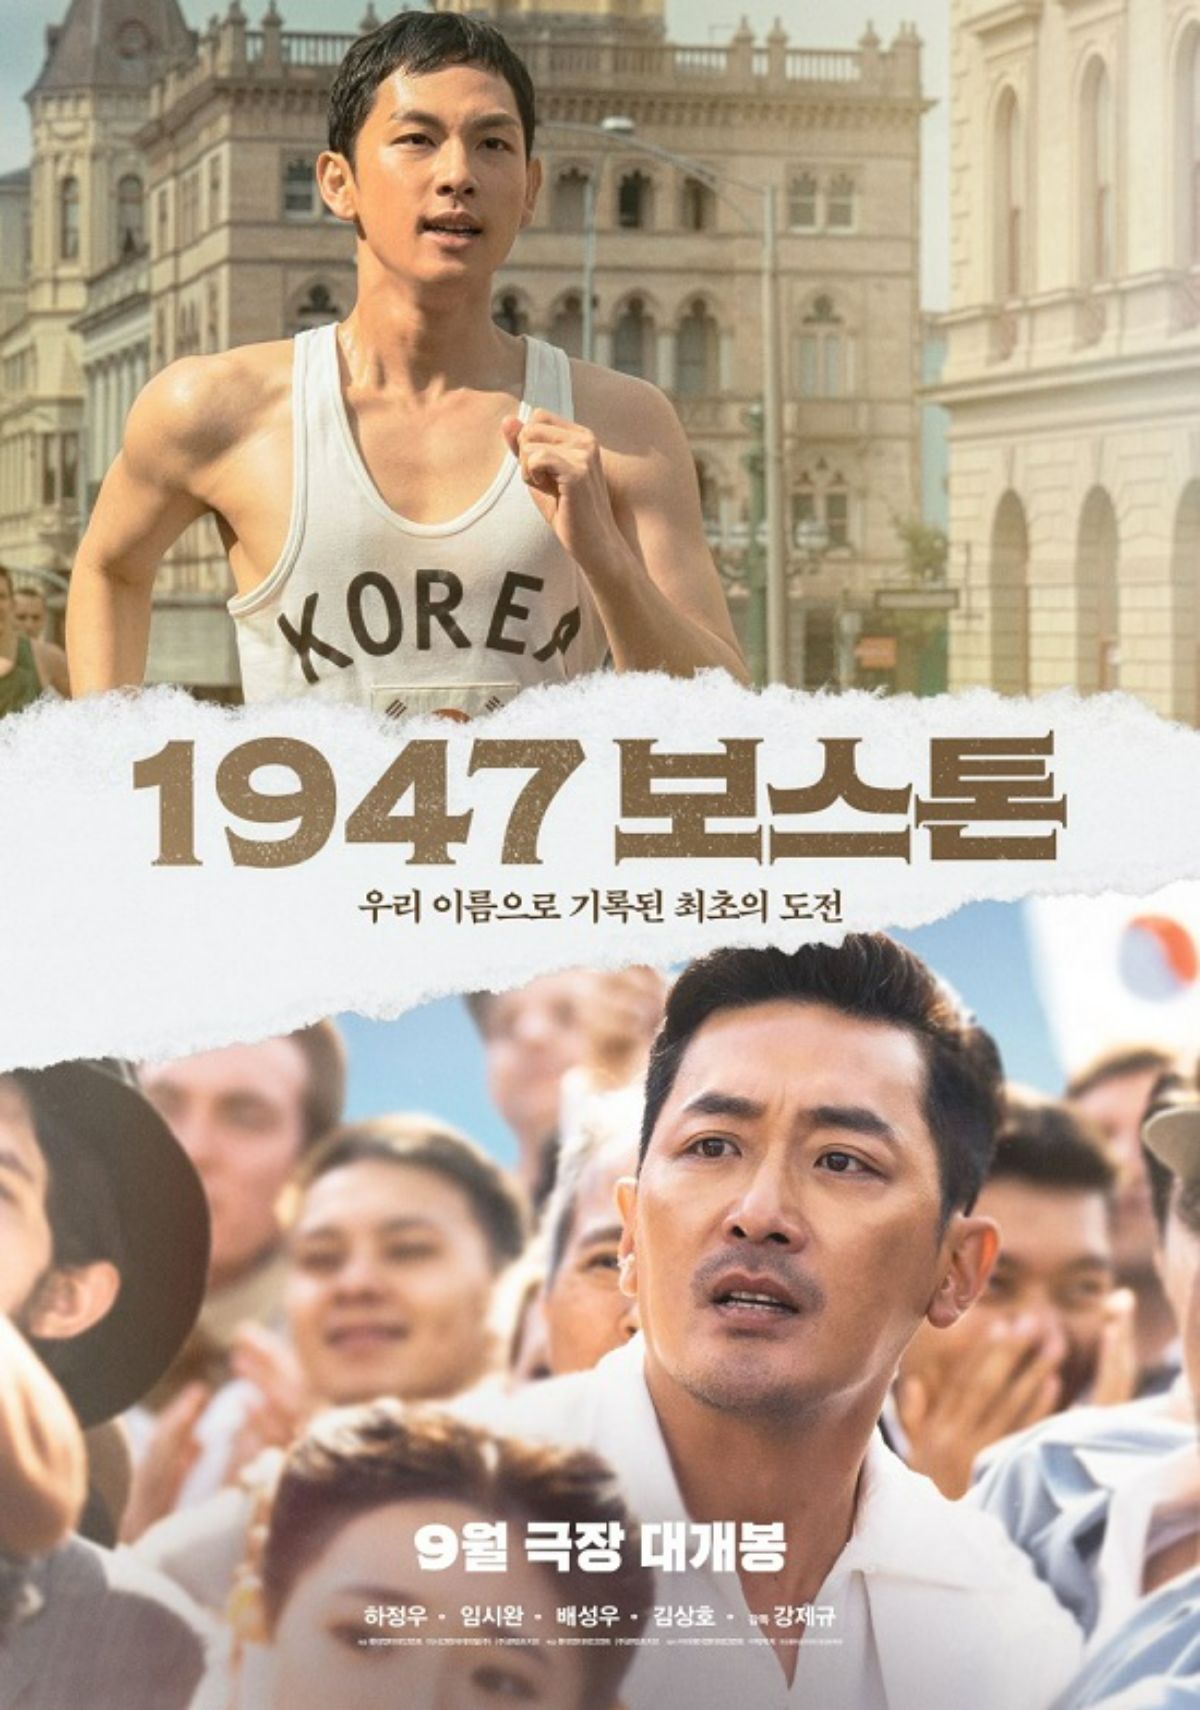 Bộ phim Bước Chân Thép (Road to Boston) dựa trên câu chuyện có thật của cuộc đời Son Ki Jeong (Ha Jung Woo) - một vận động viên giành huy chương vàng marathon trong Thế vận hội Berlin năm 1936